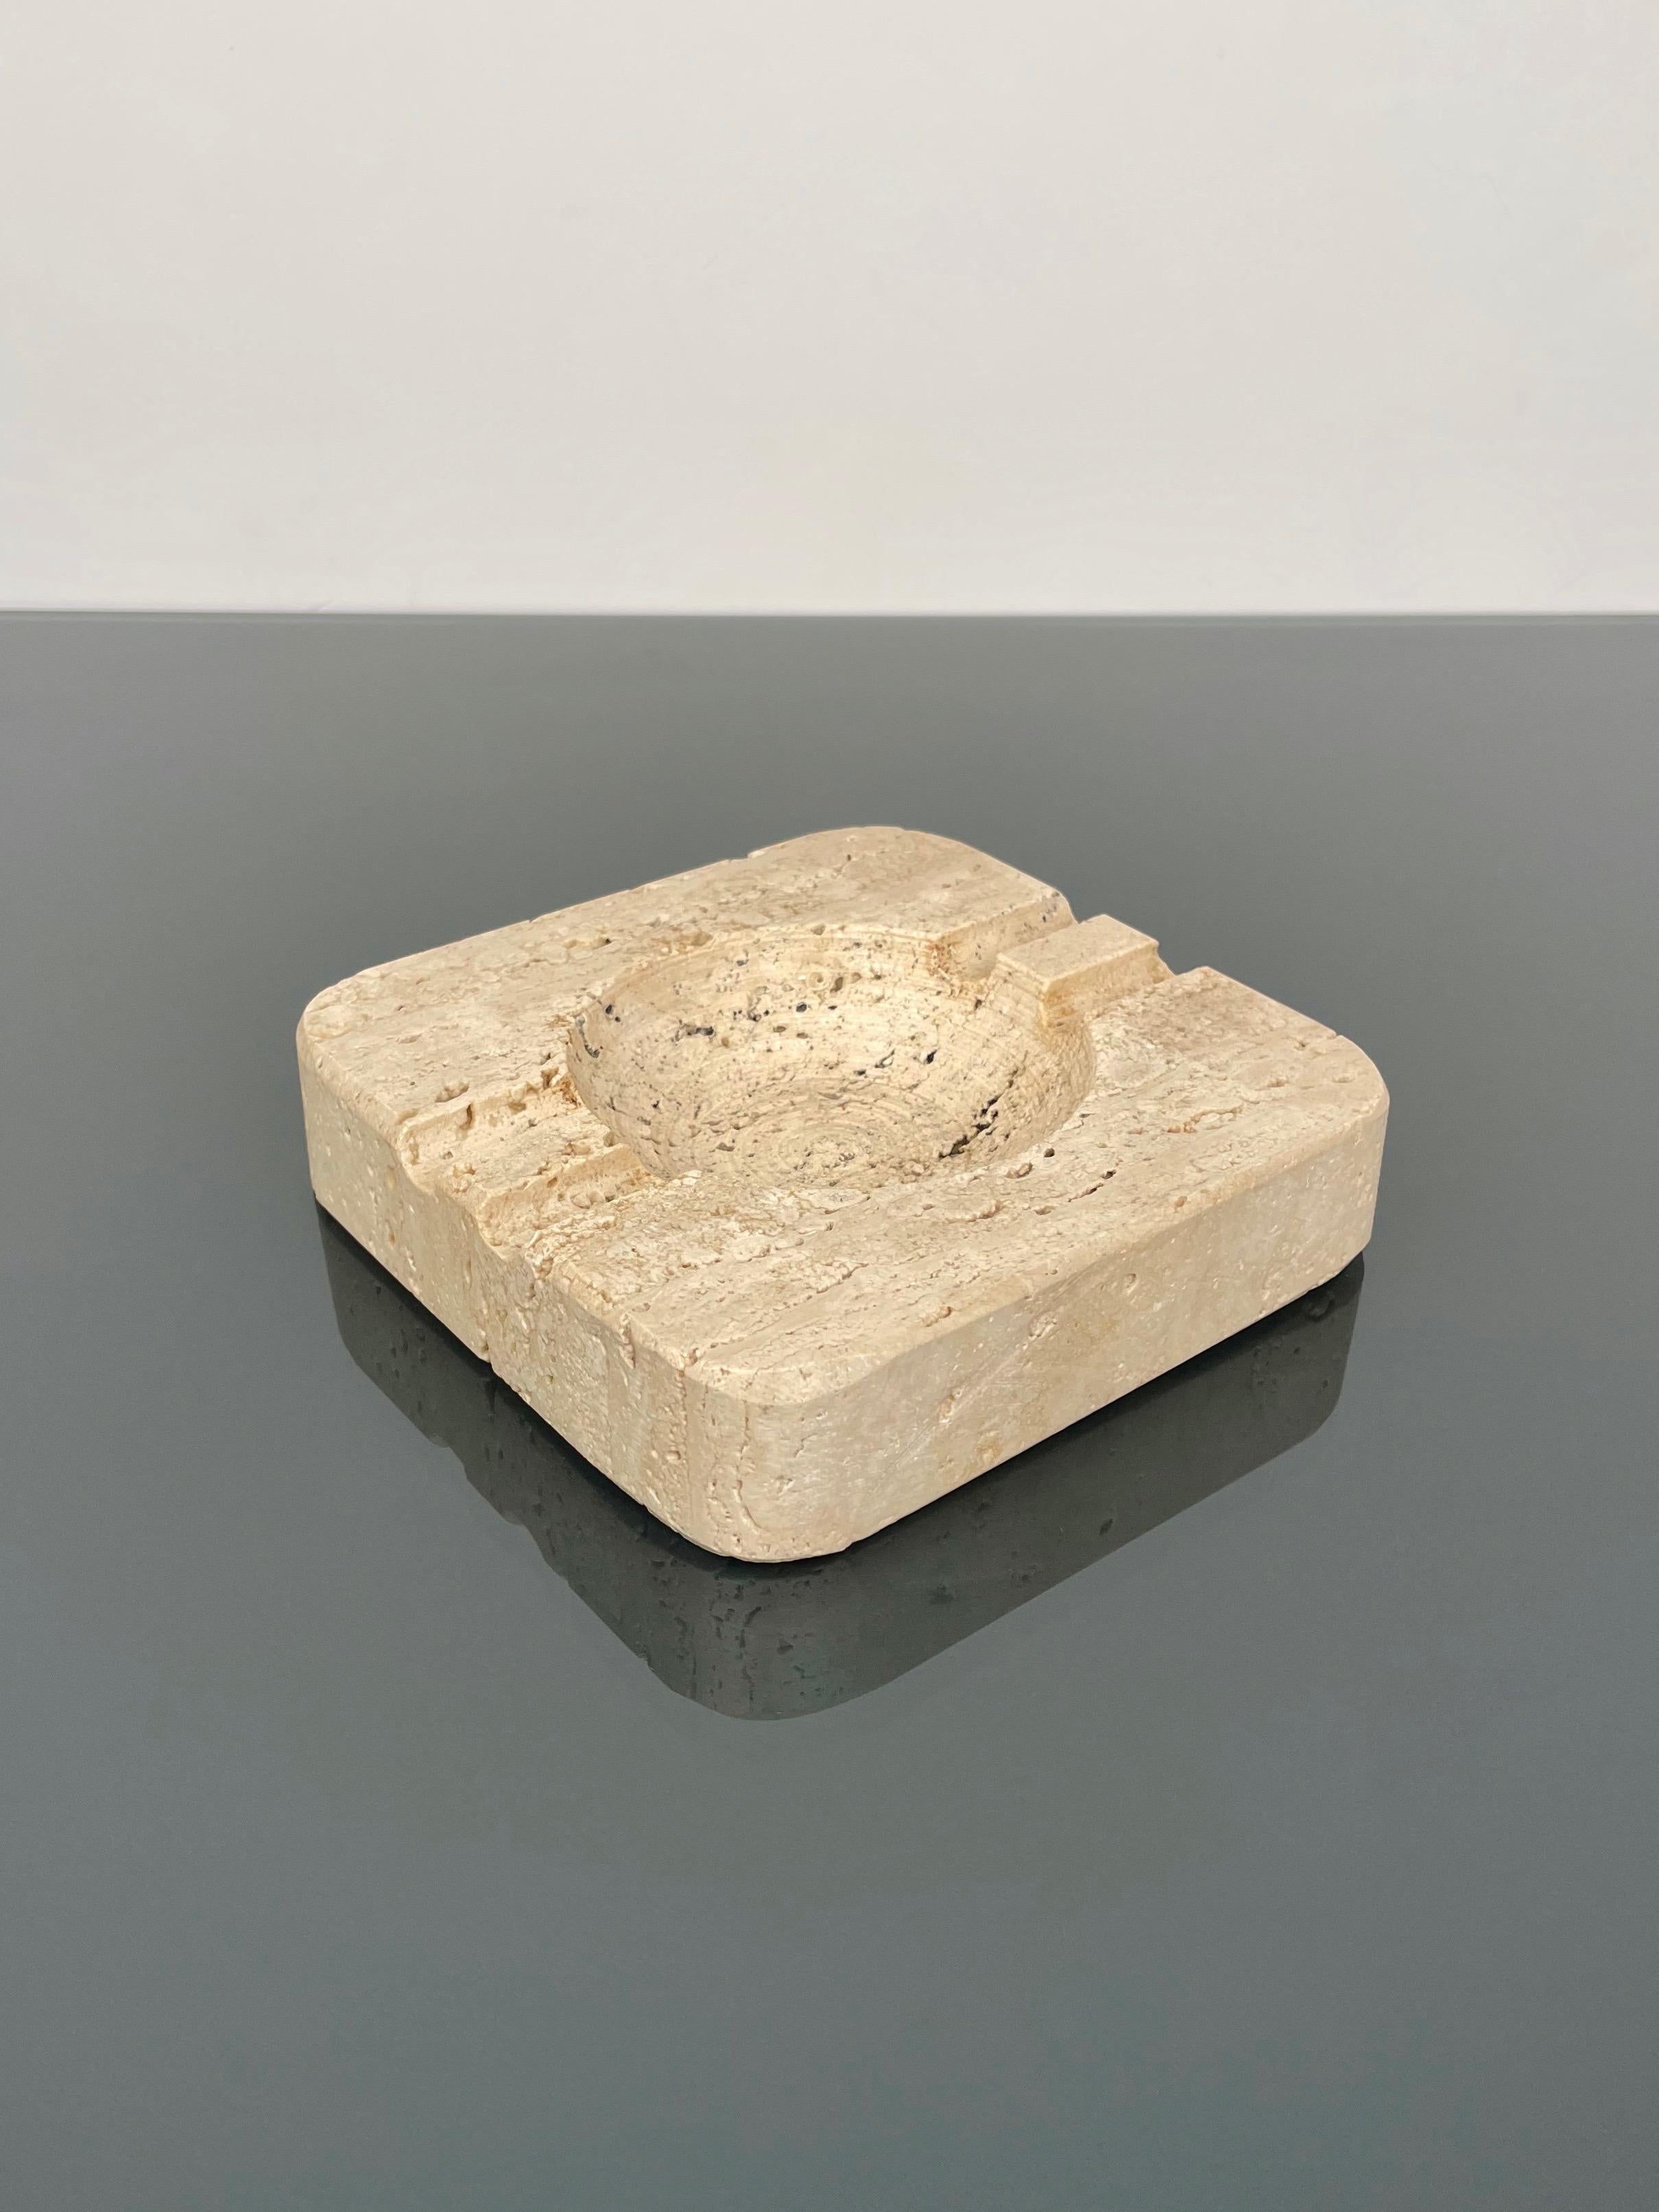 Cendrier carré en marbre travertin attribué à Fratelli Mannelli. 

Fabriqué en Italie dans les années 1970.